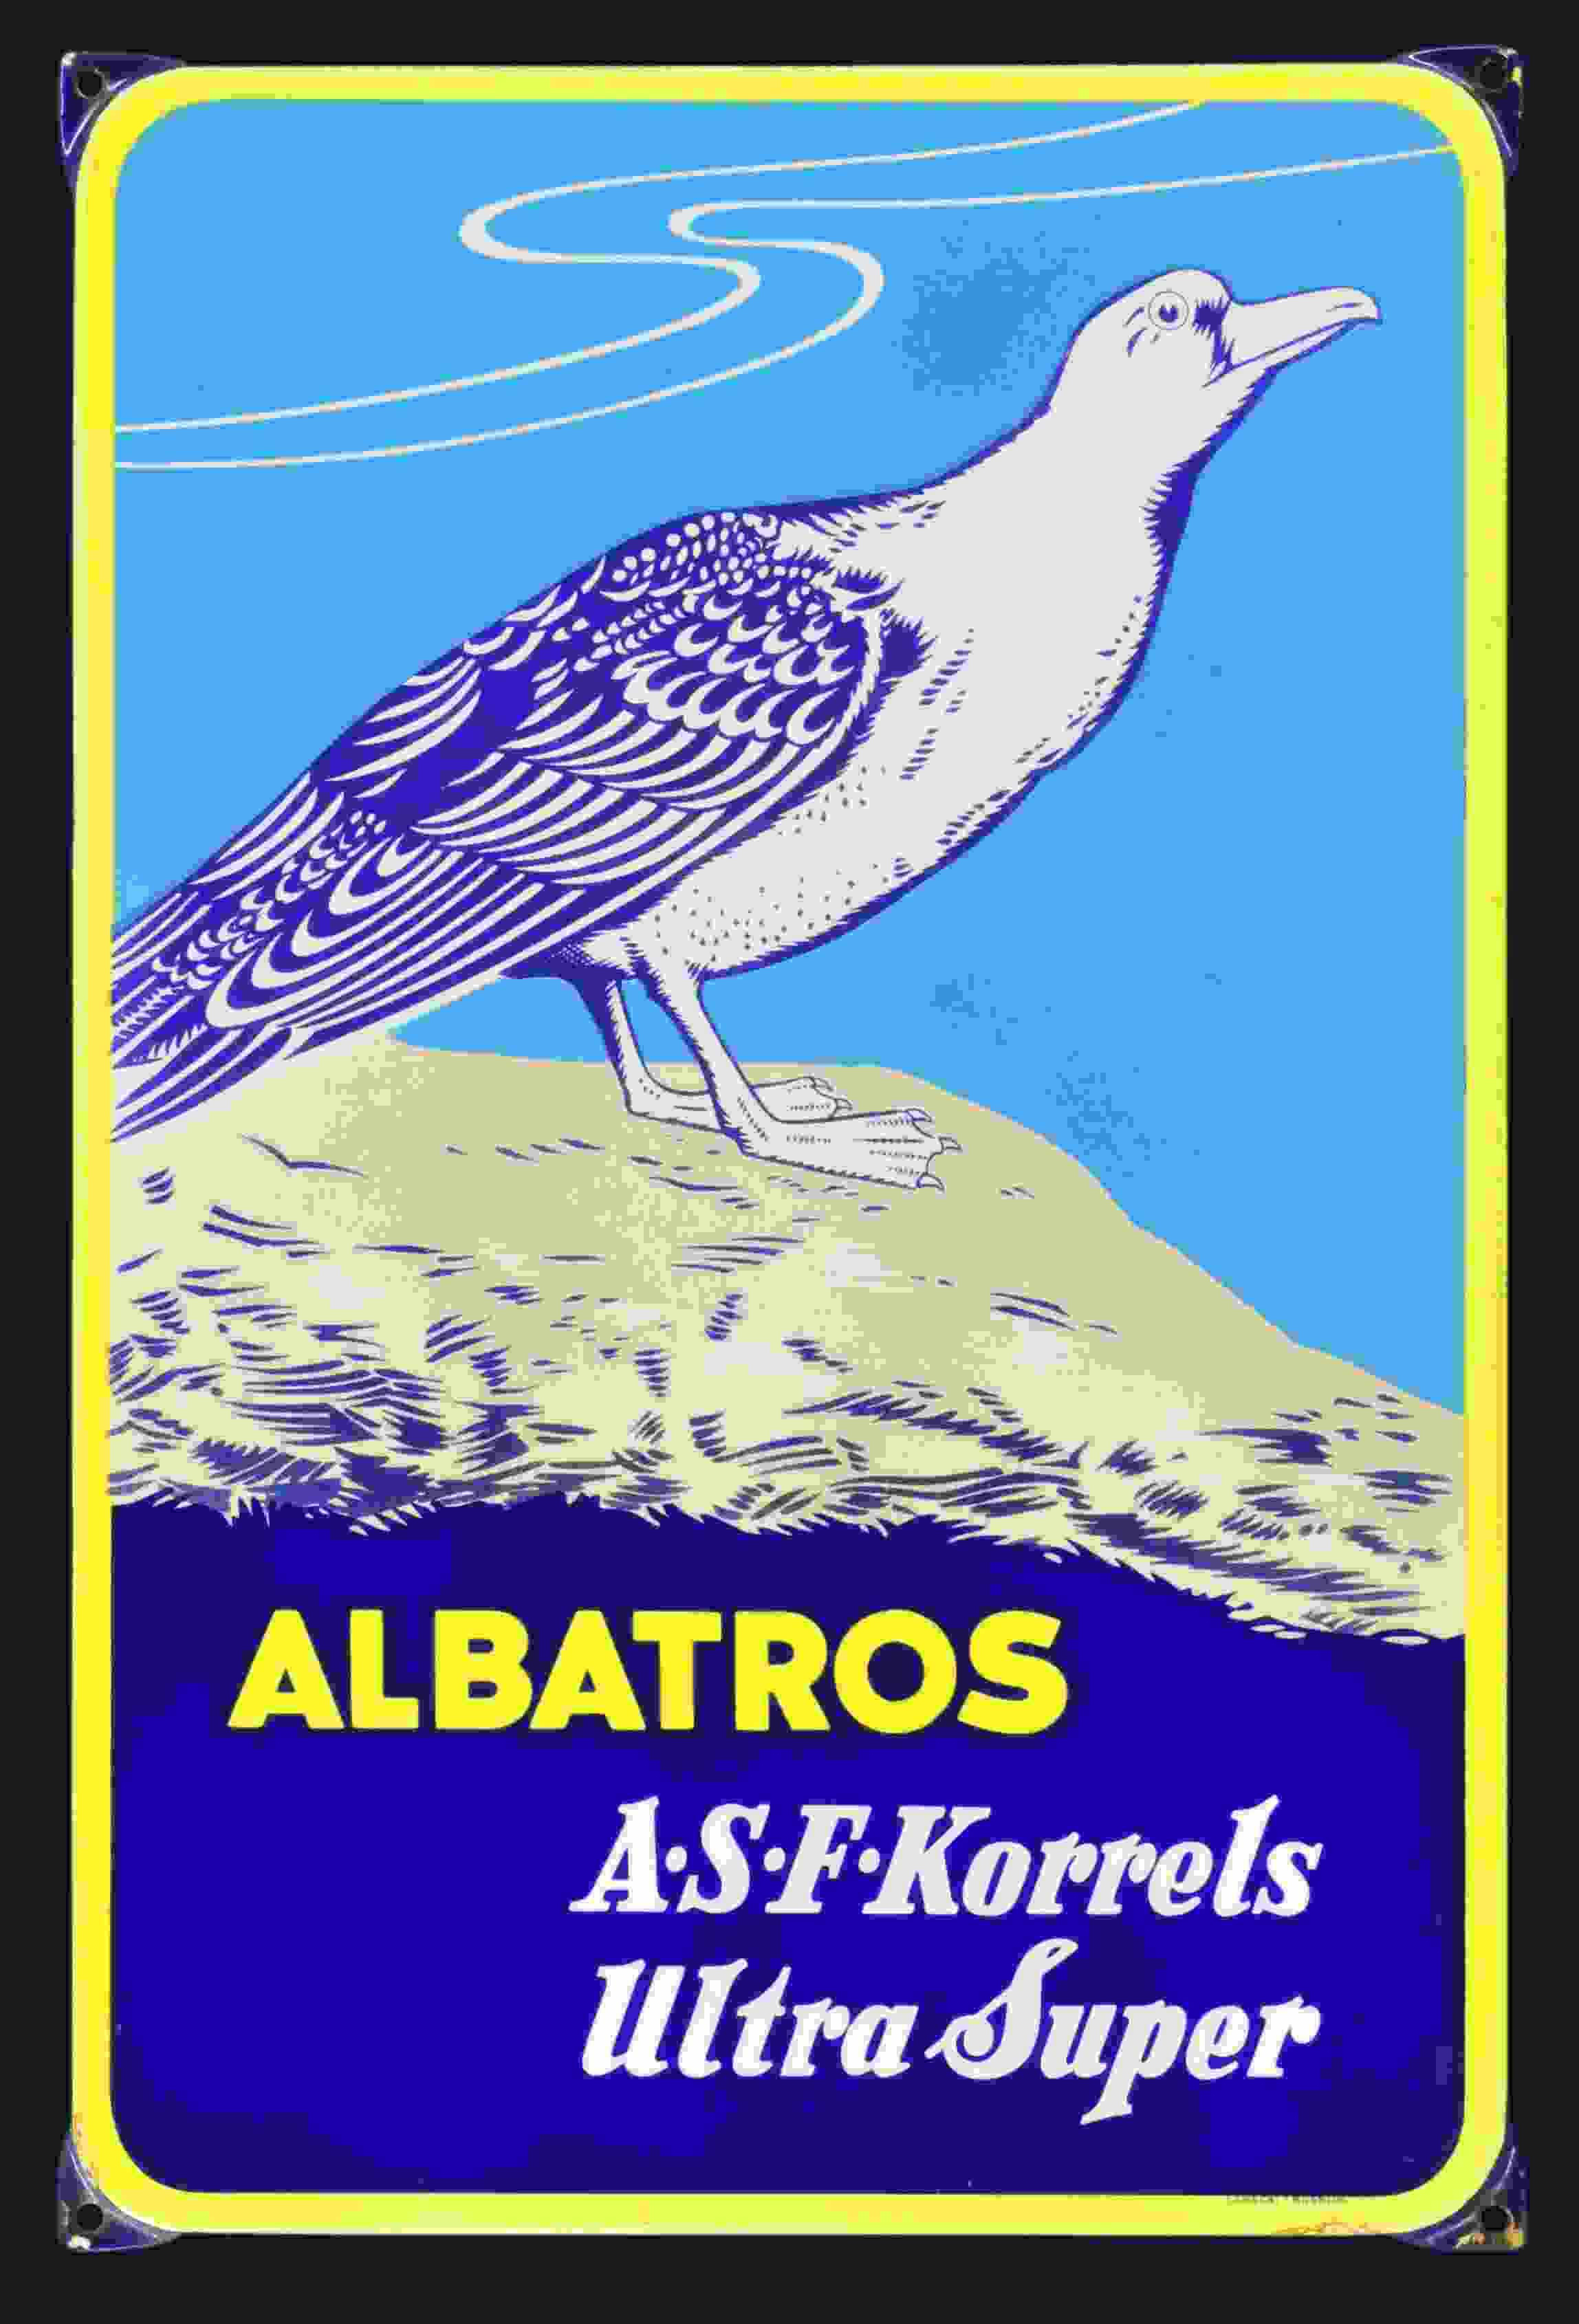 Albatros A.S.F. Korrels 